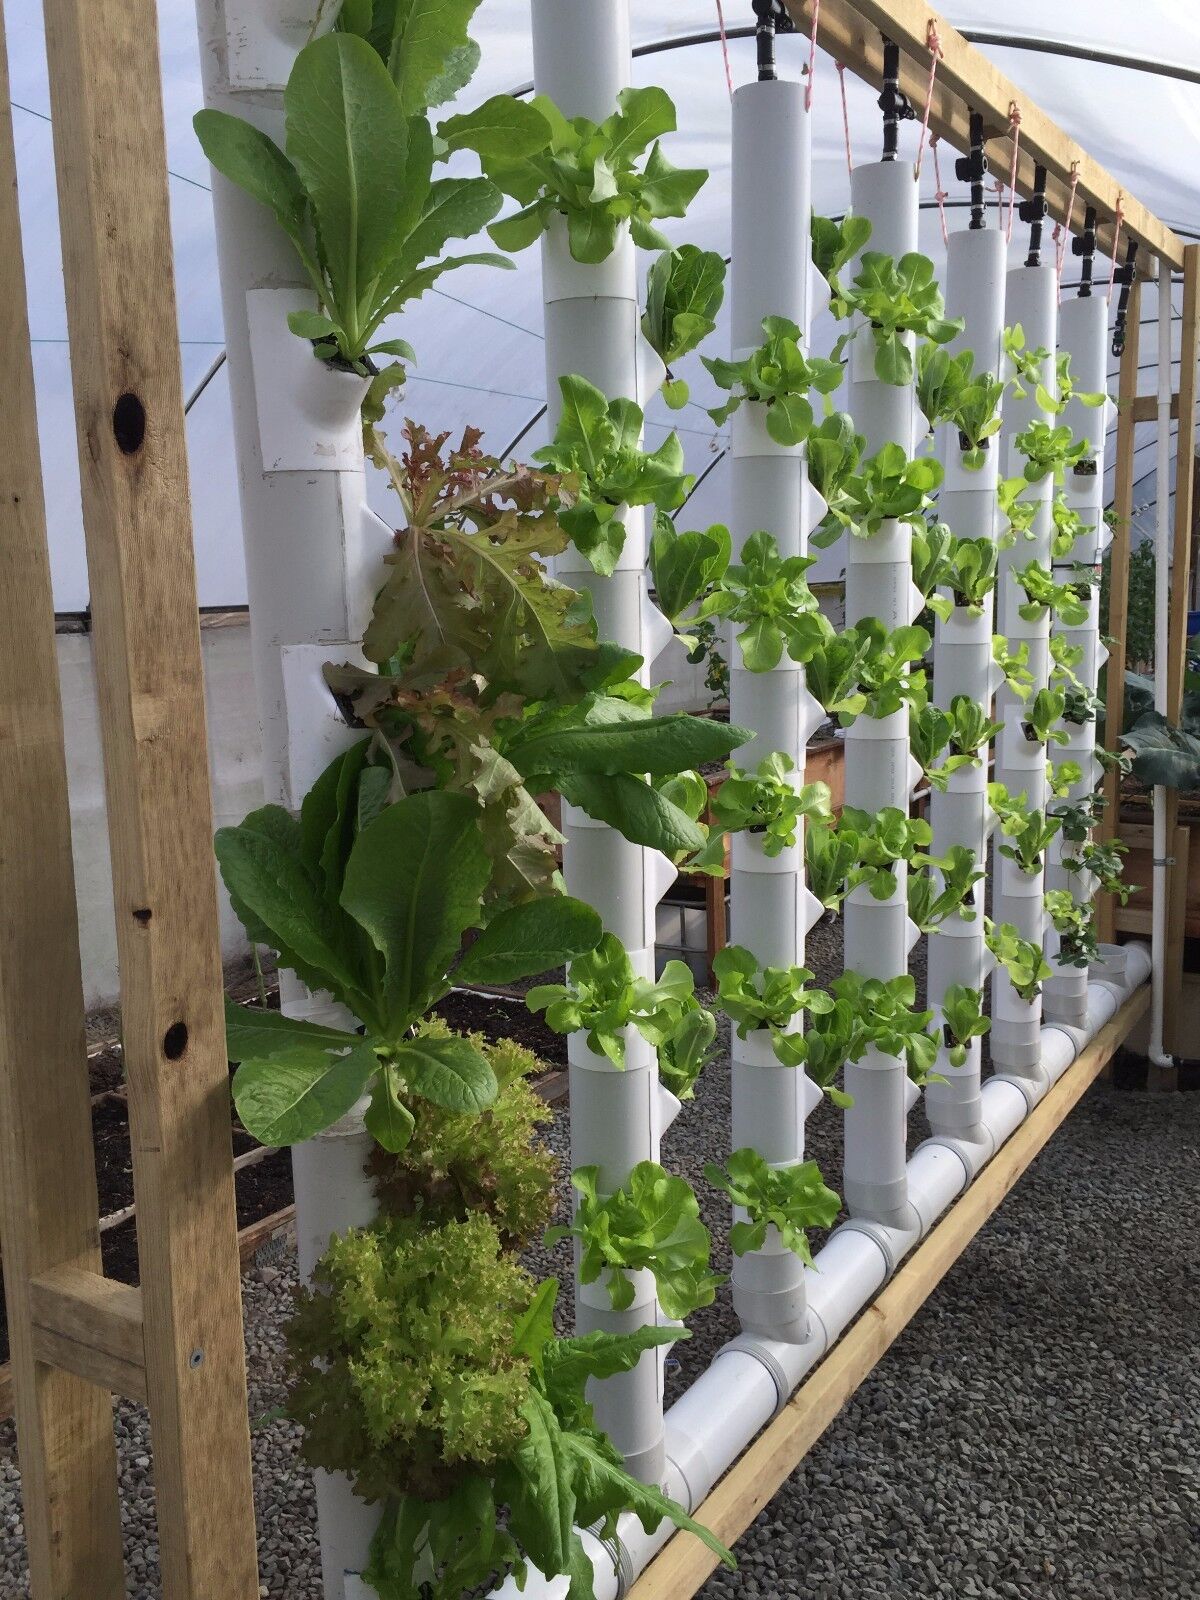 GroPockets Vertical Garden - Aquaponics, Hydroponics, Soil